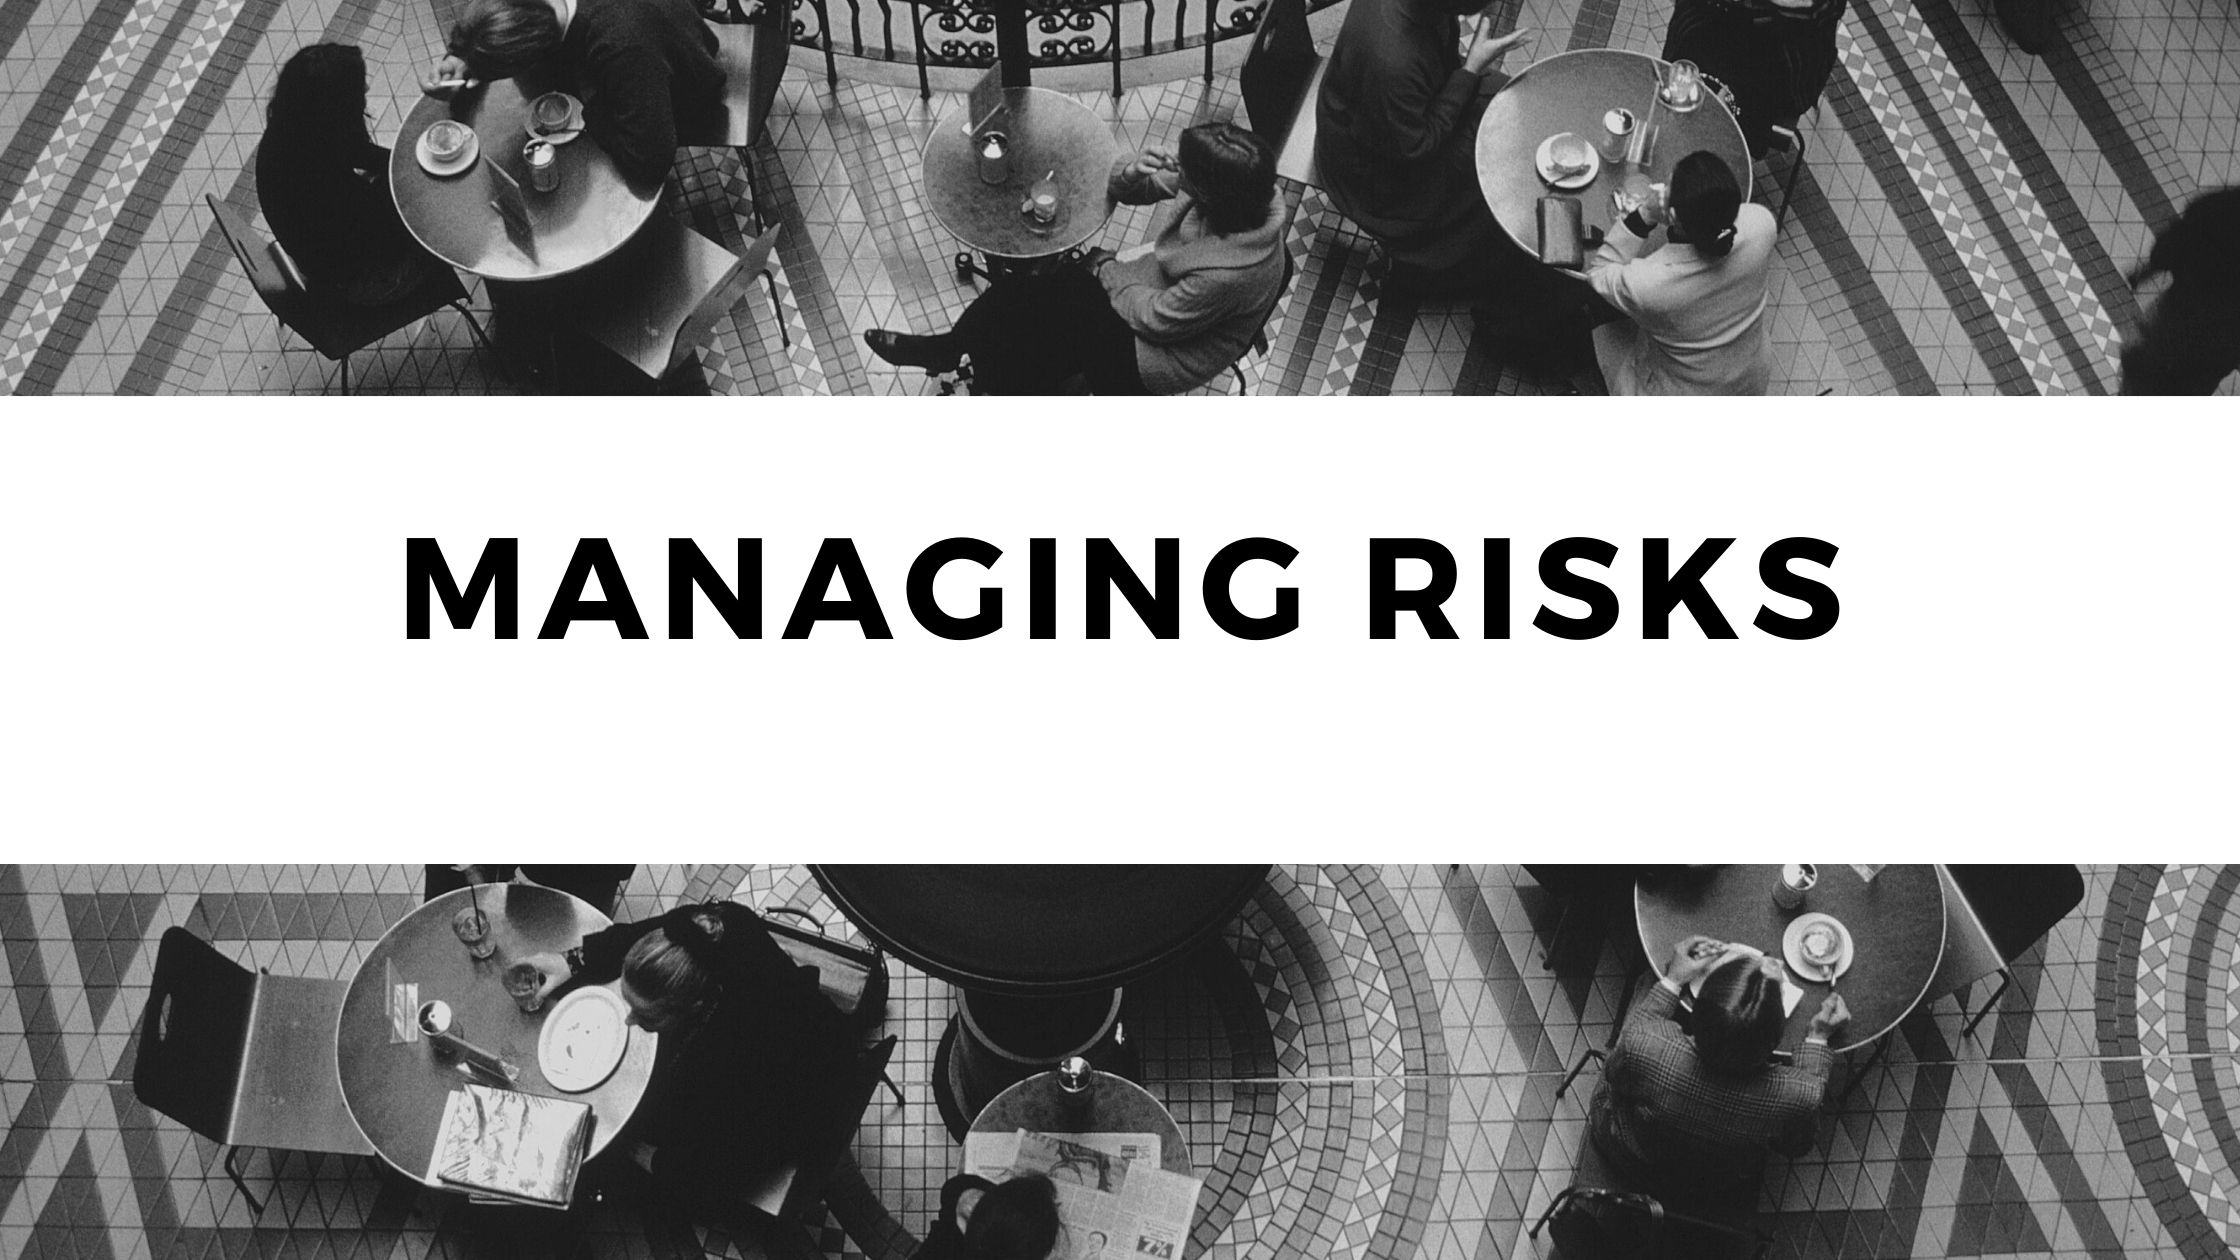 Managing risks